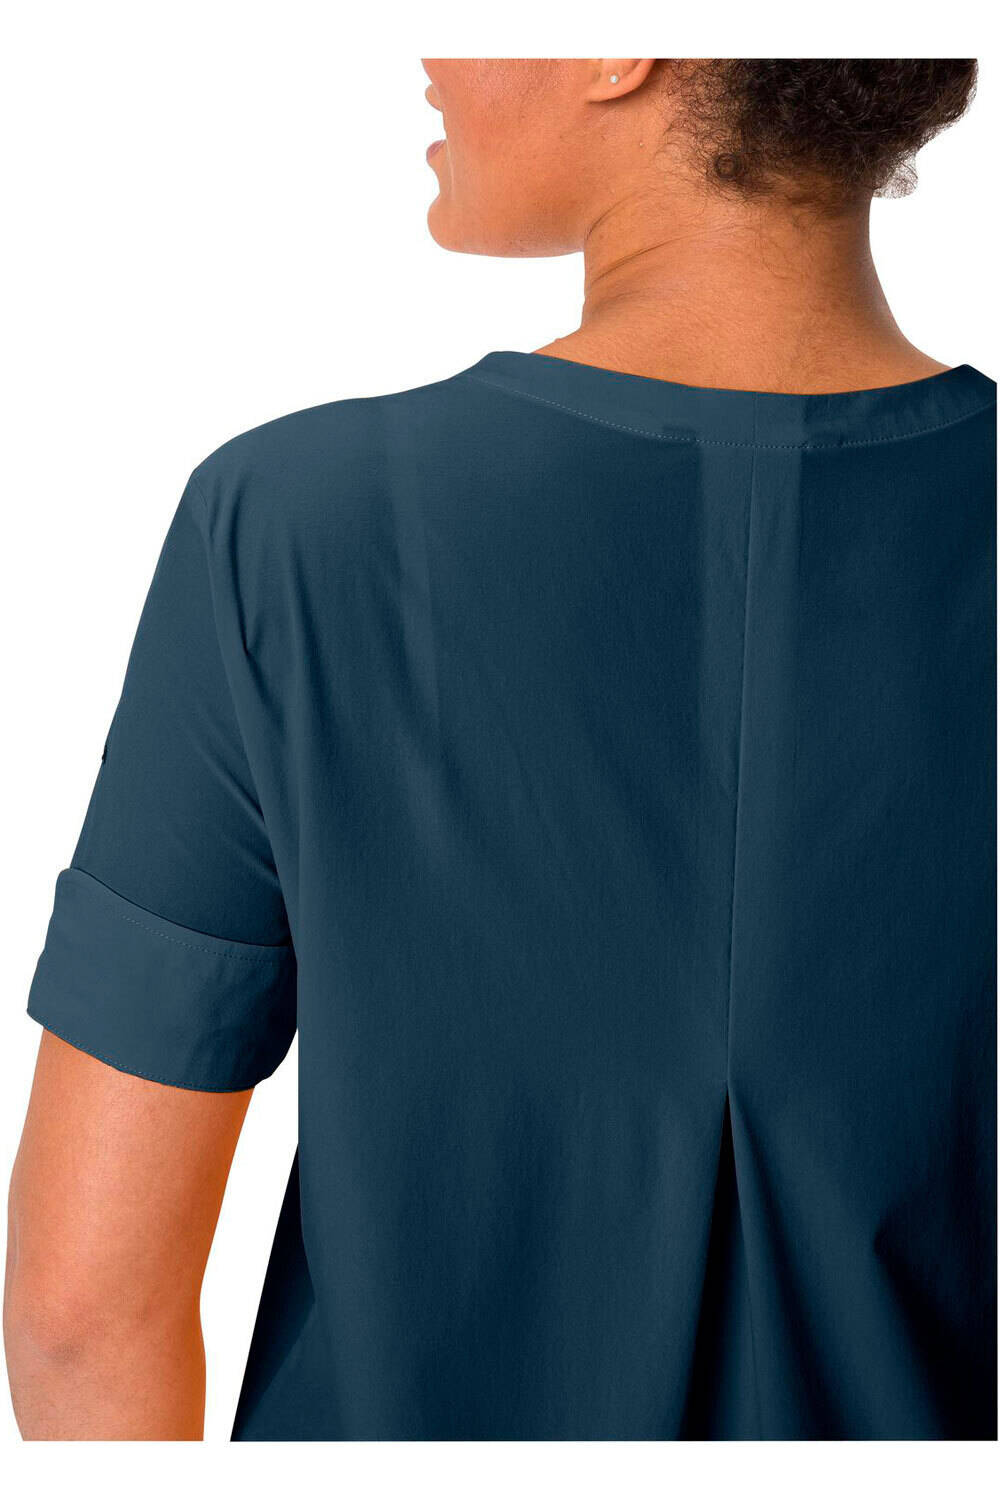 Vaude camisa montaña manga corta mujer Women  s Skomer Shirt III 03